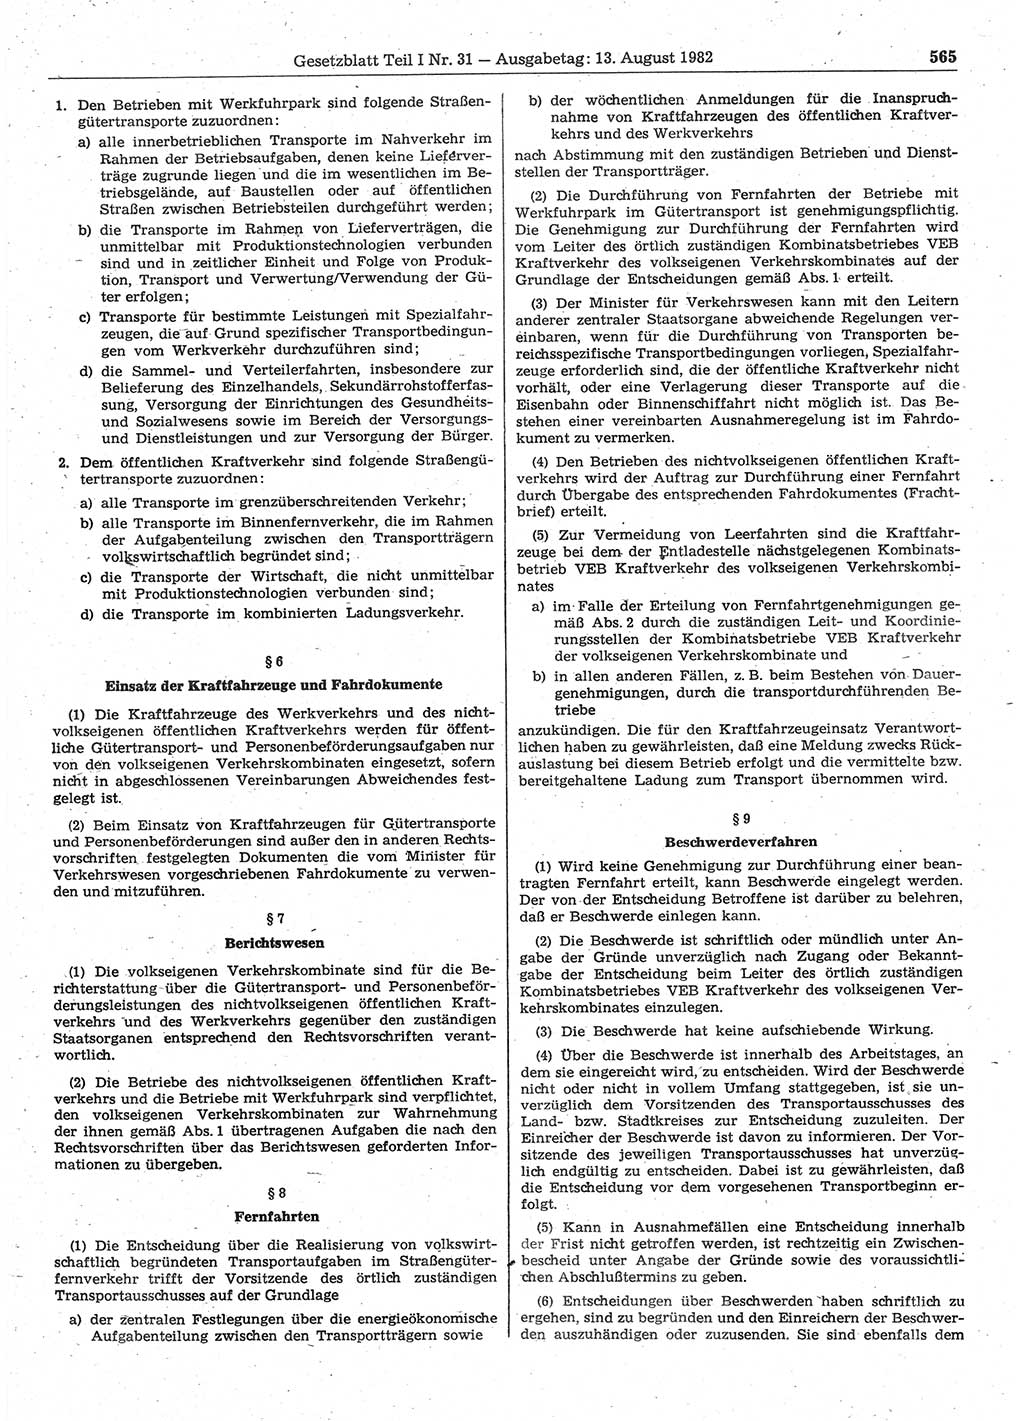 Gesetzblatt (GBl.) der Deutschen Demokratischen Republik (DDR) Teil Ⅰ 1982, Seite 565 (GBl. DDR Ⅰ 1982, S. 565)